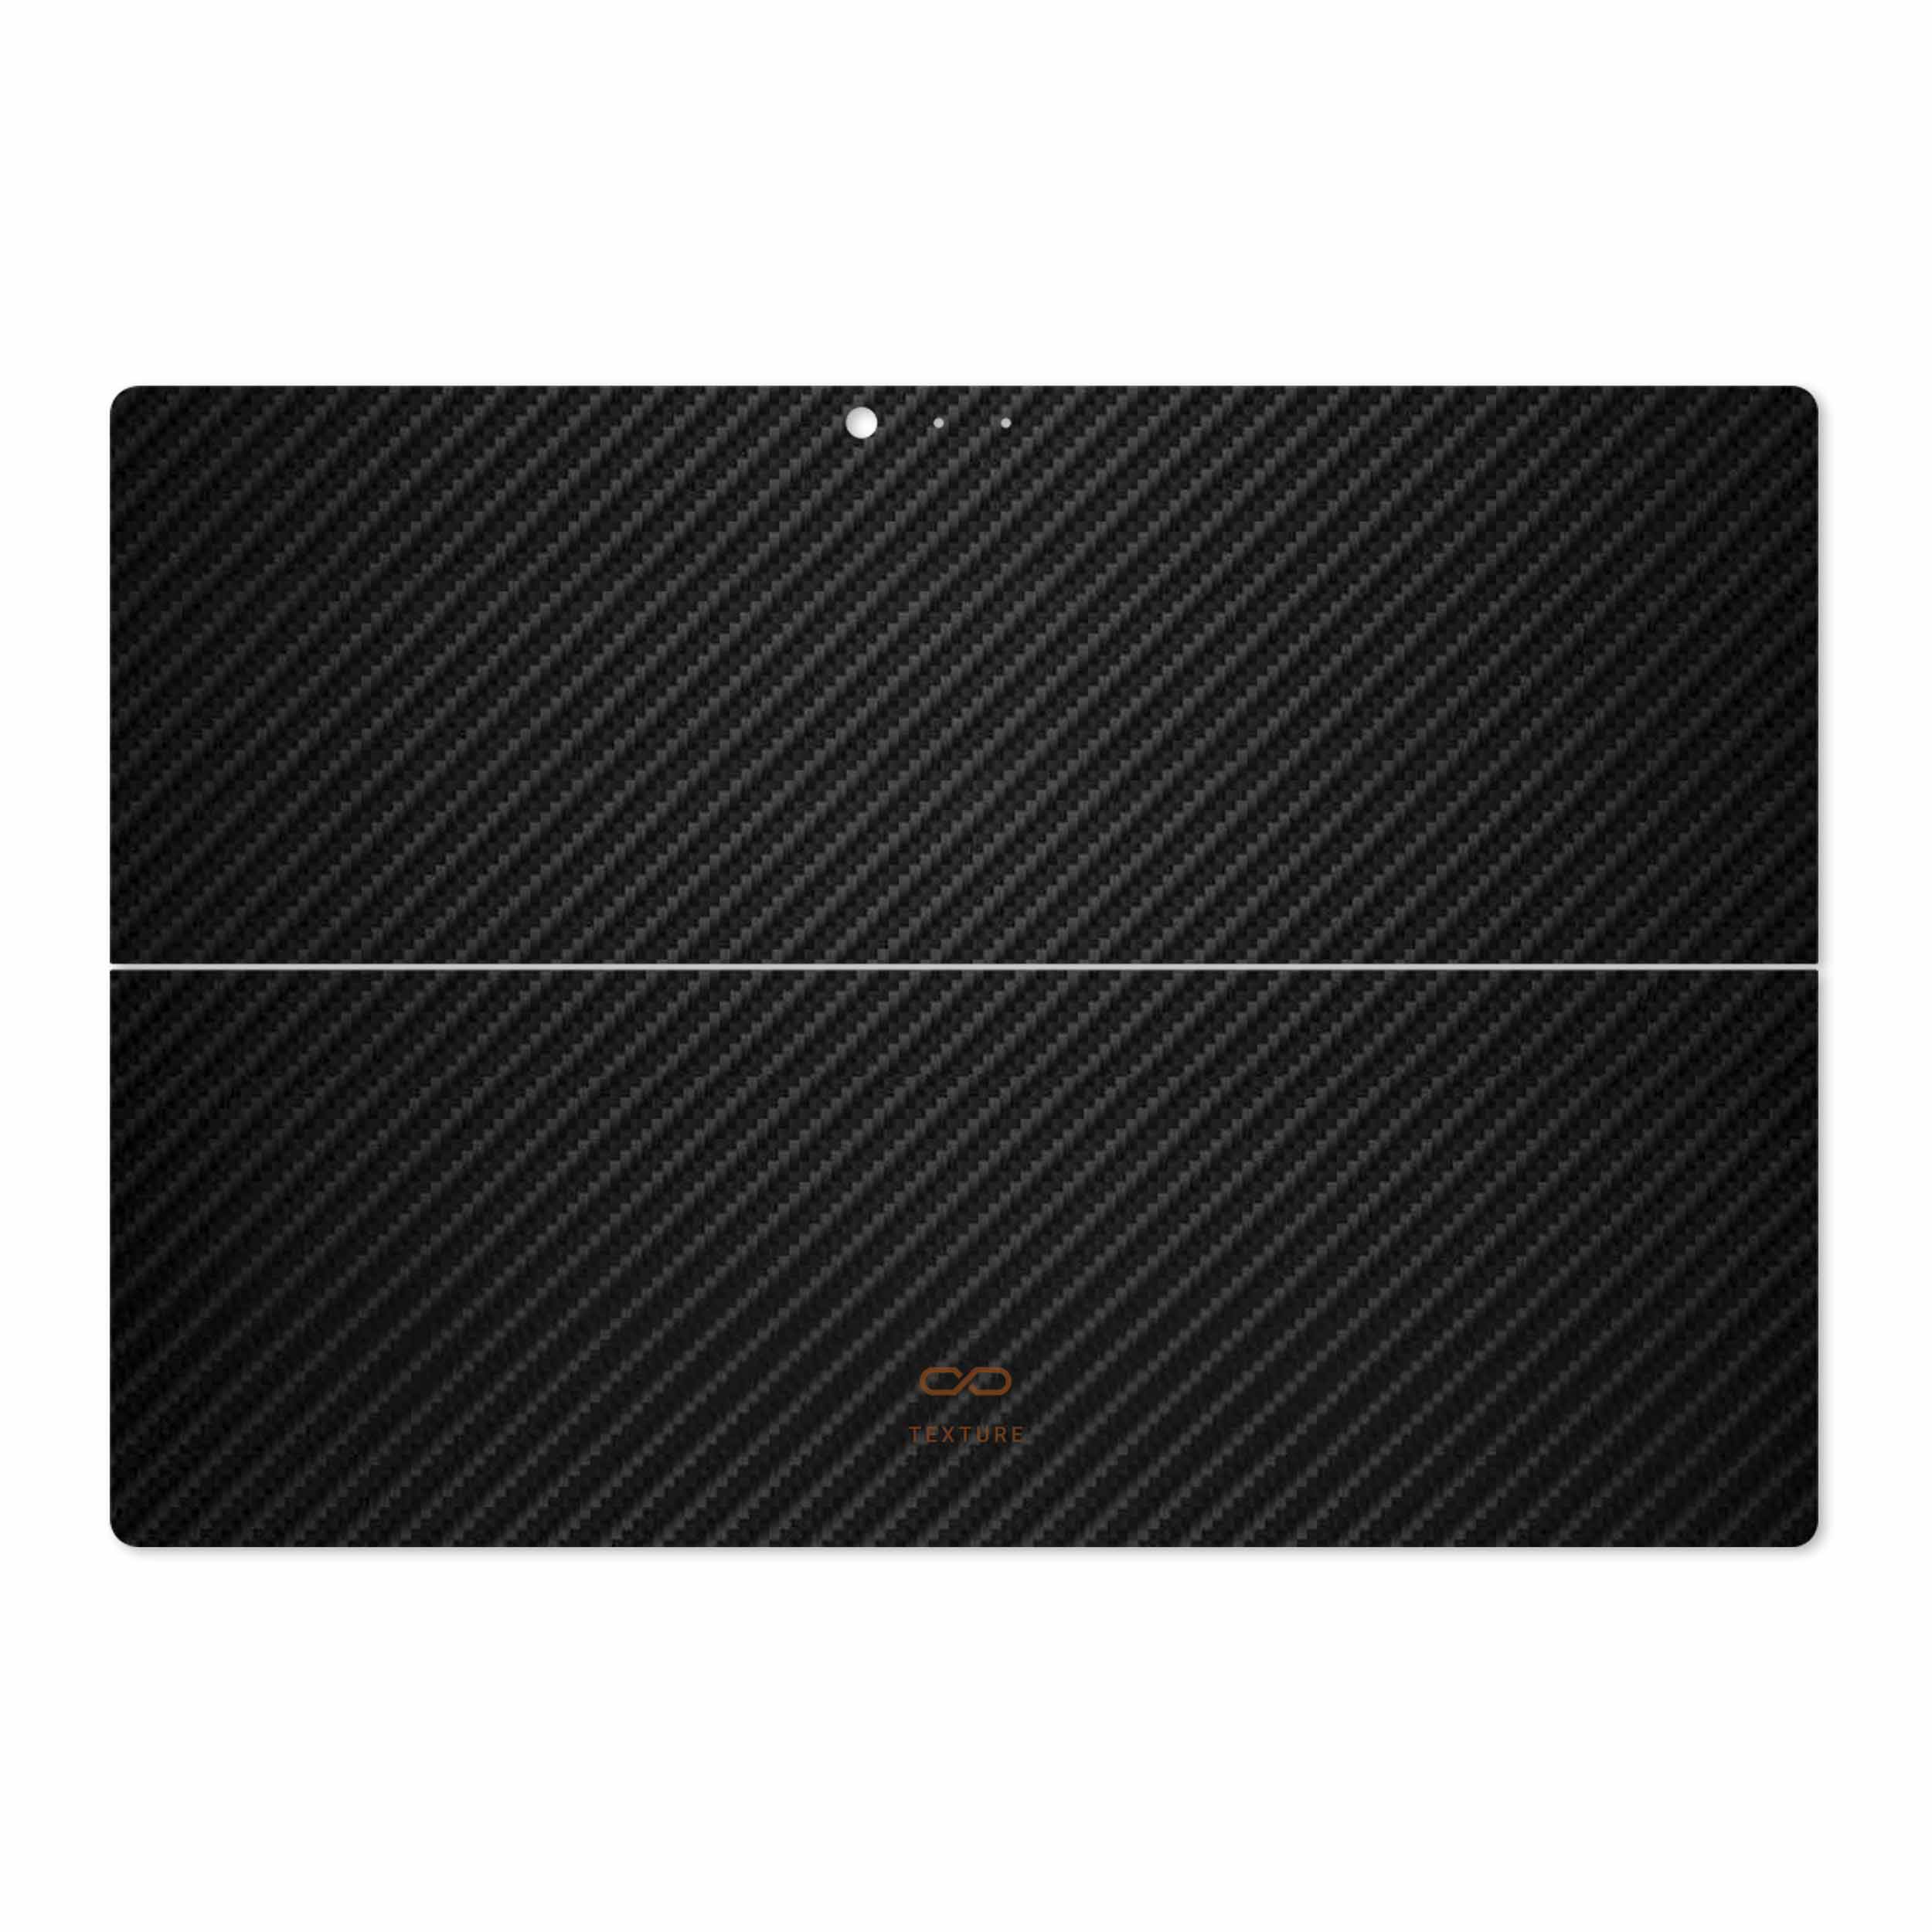 برچسب پوششی ماهوت مدل Carbon-Fiber مناسب برای تبلت مایکروسافت Surface Pro 3 2014